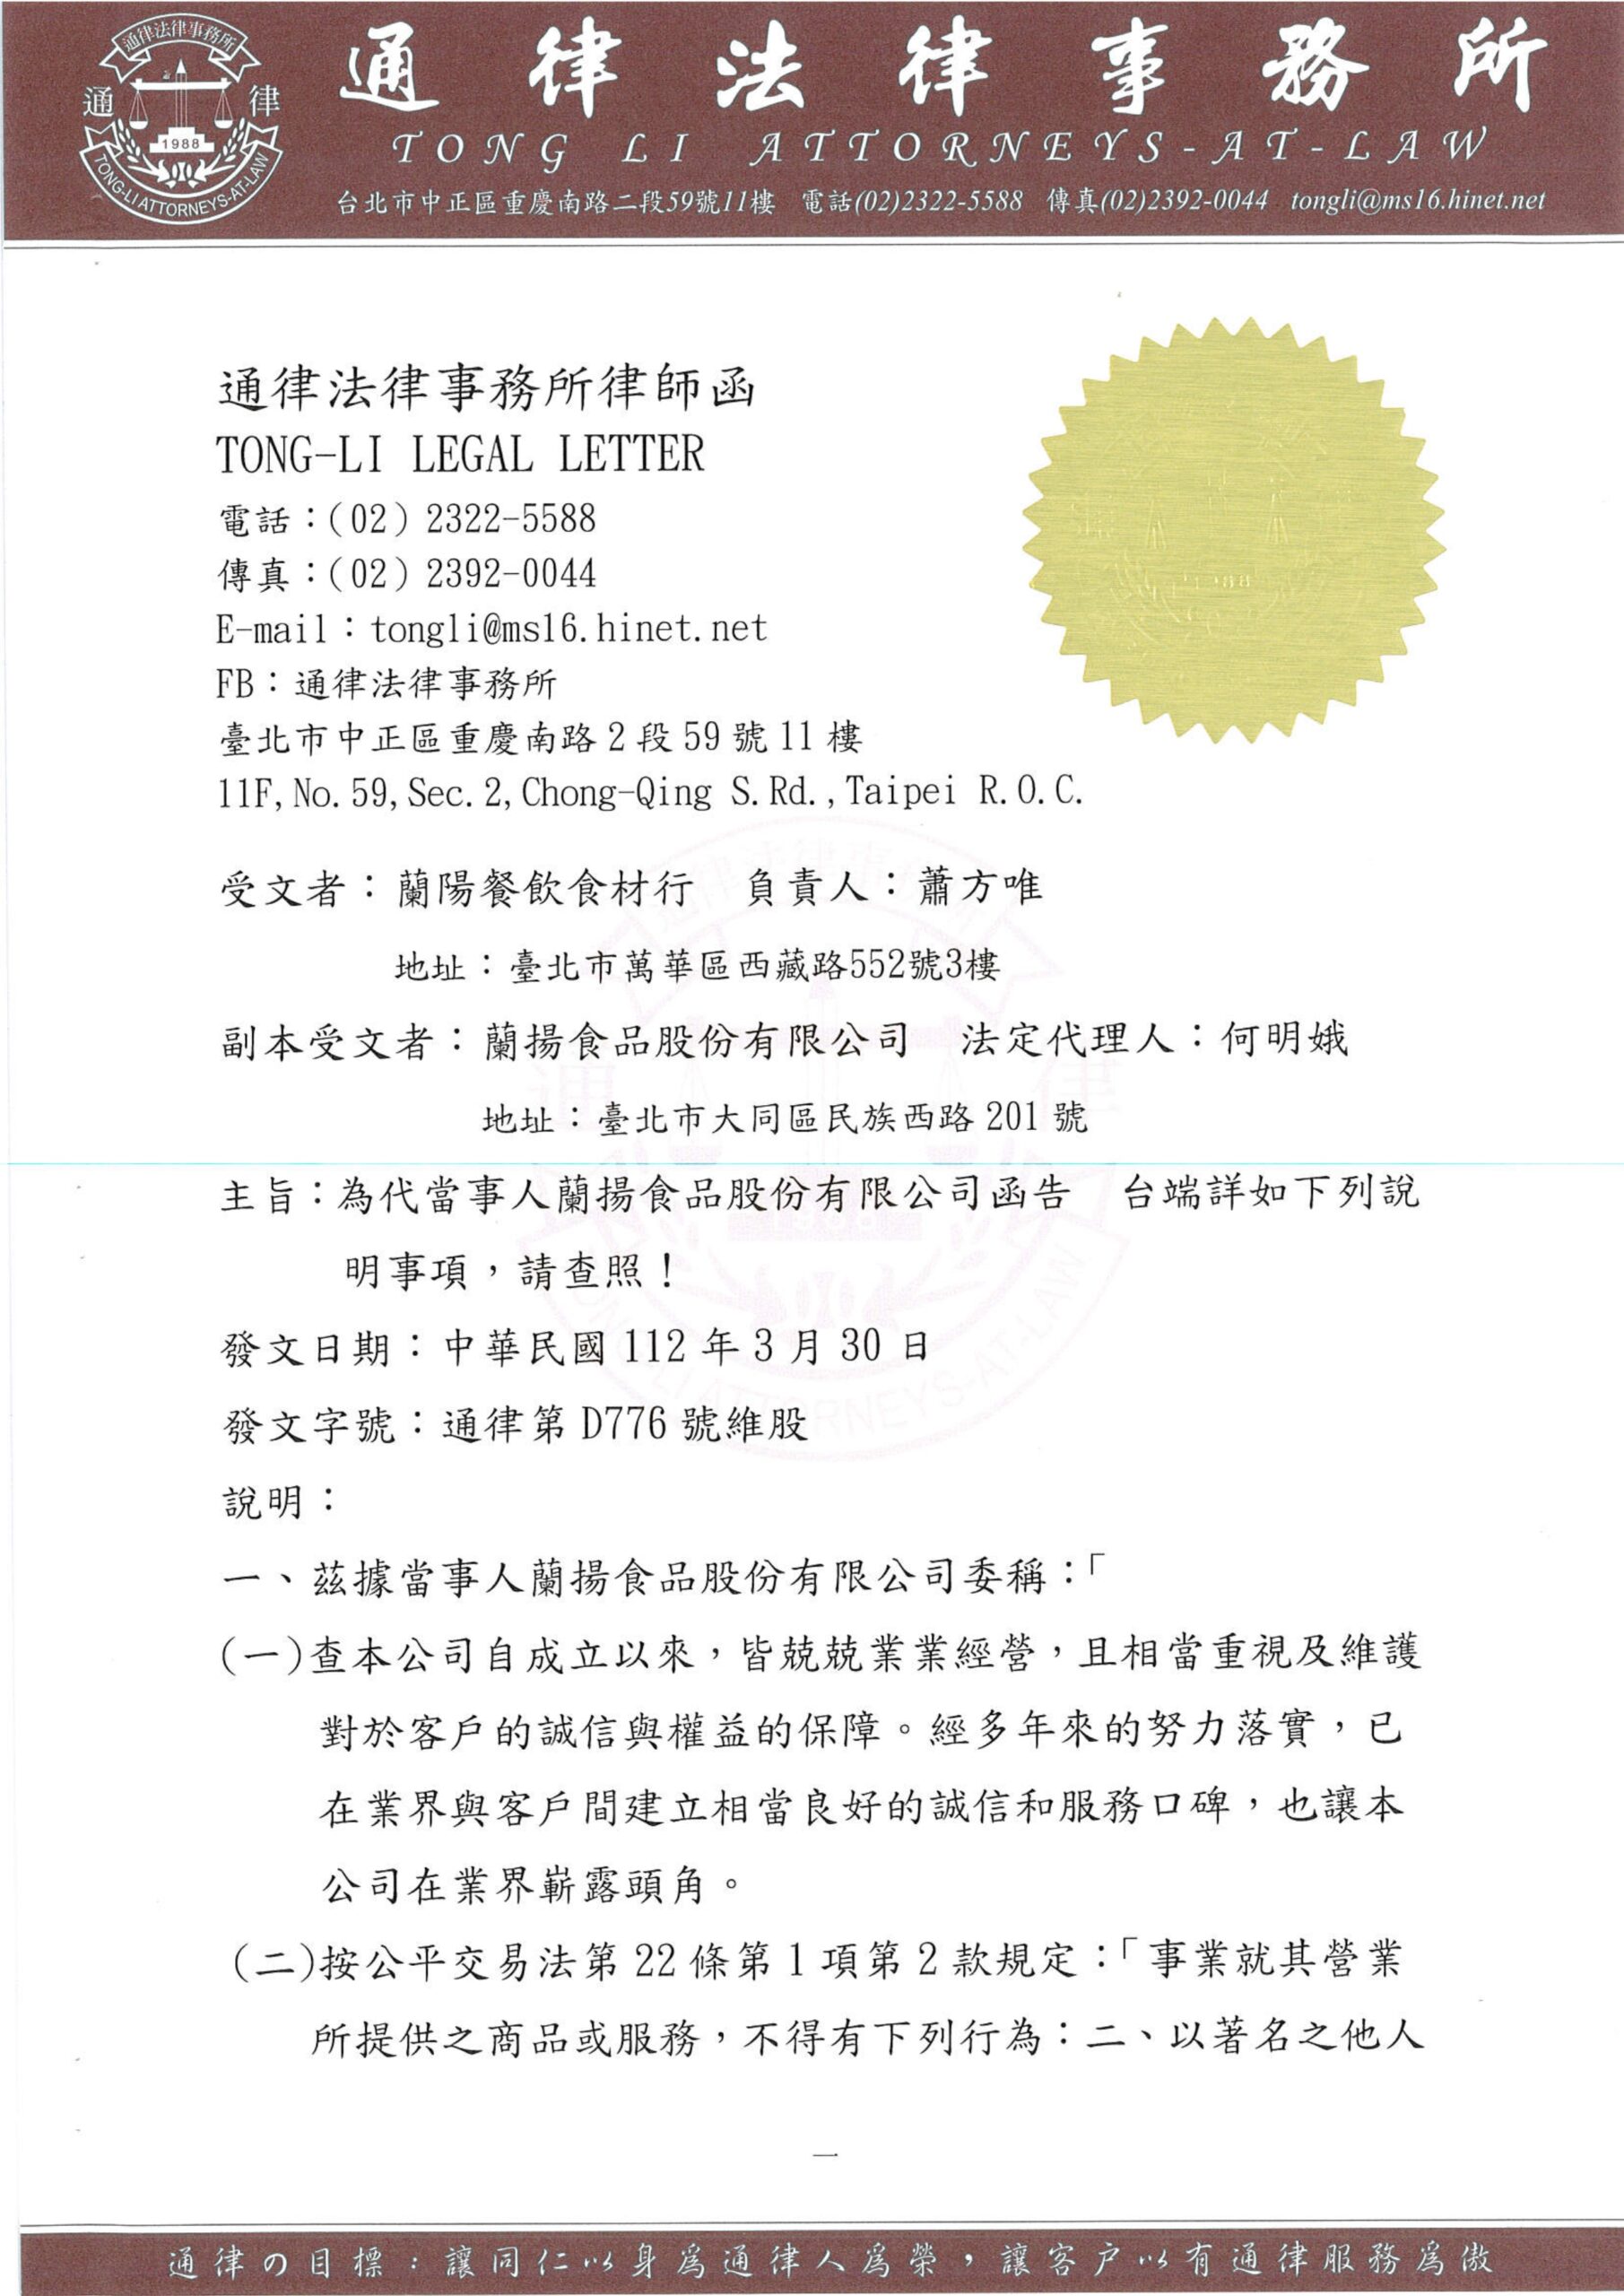 Lanyang Catering Materials Co., Ltd._Avvocato Lettera 230331 Ricevuta_pagina-0001